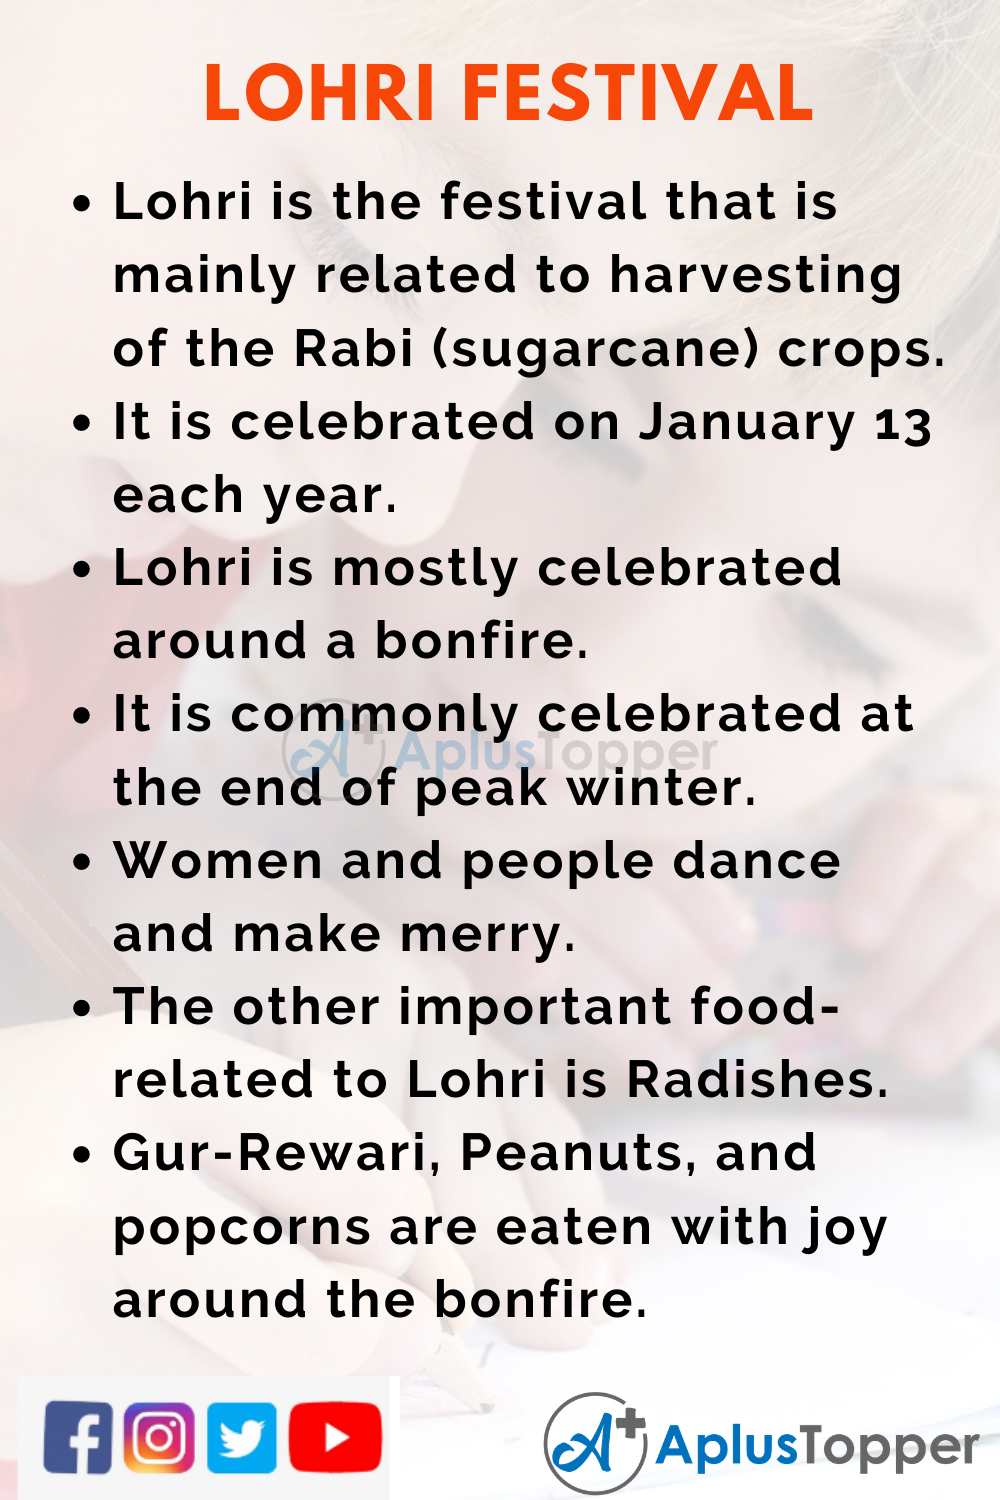 10 Lines on Lohri Festival for Kids